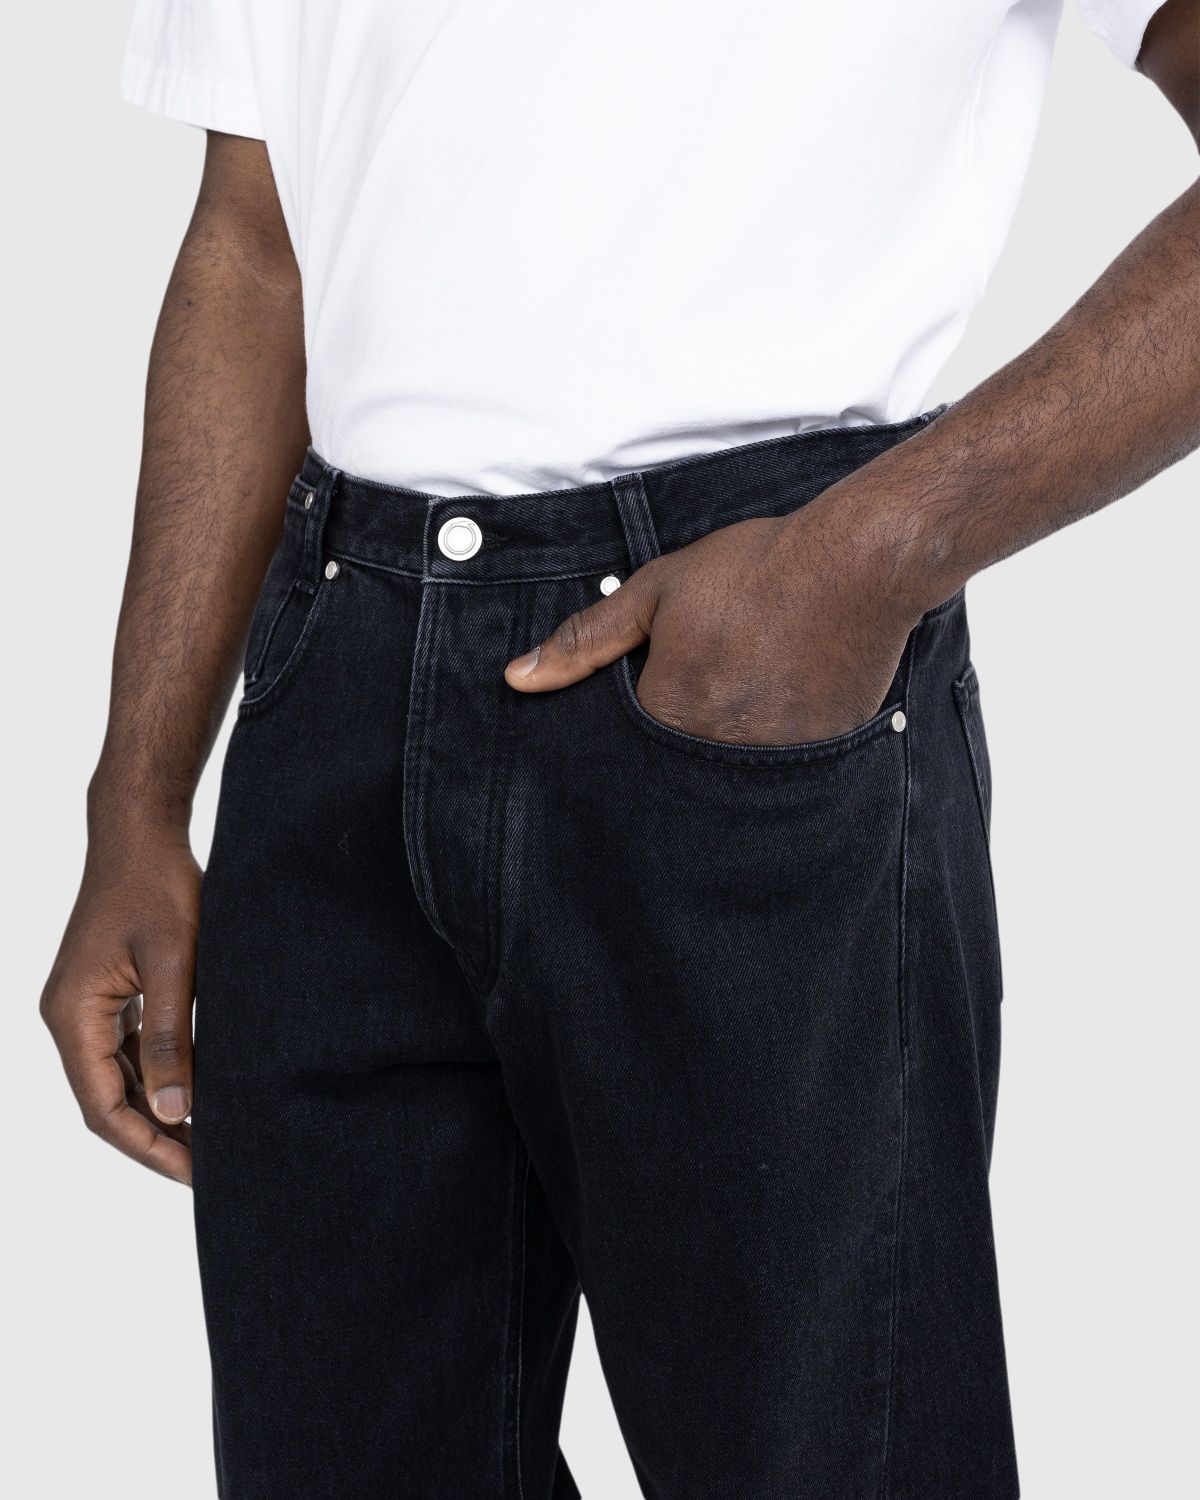 Trussardi – Five-Pocket Twisted Tapered Jeans Black Rigid